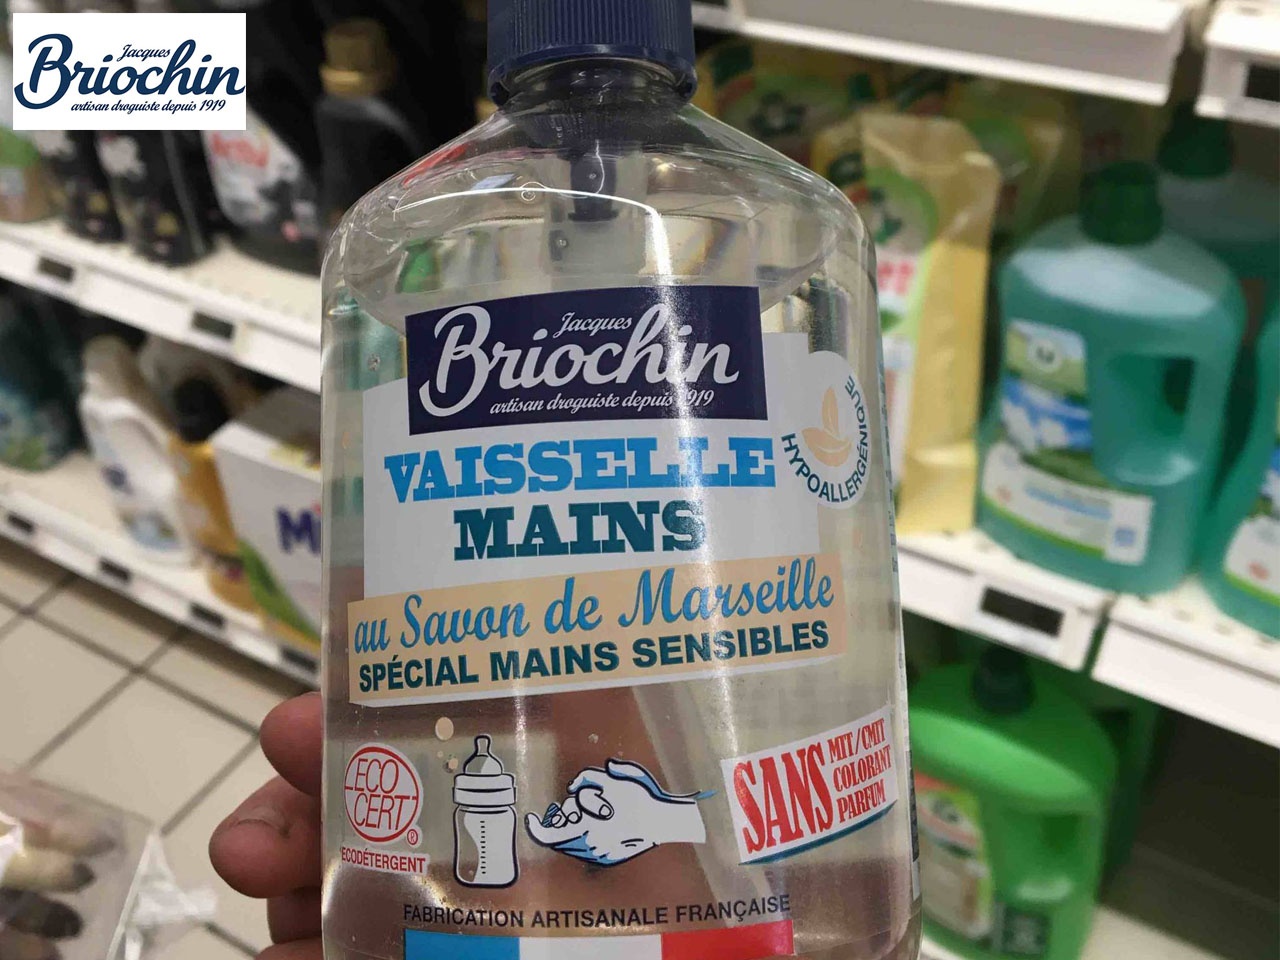 Jacques Briochin lance son nouveau produit « vaisselle & mains au savon de Marseille »